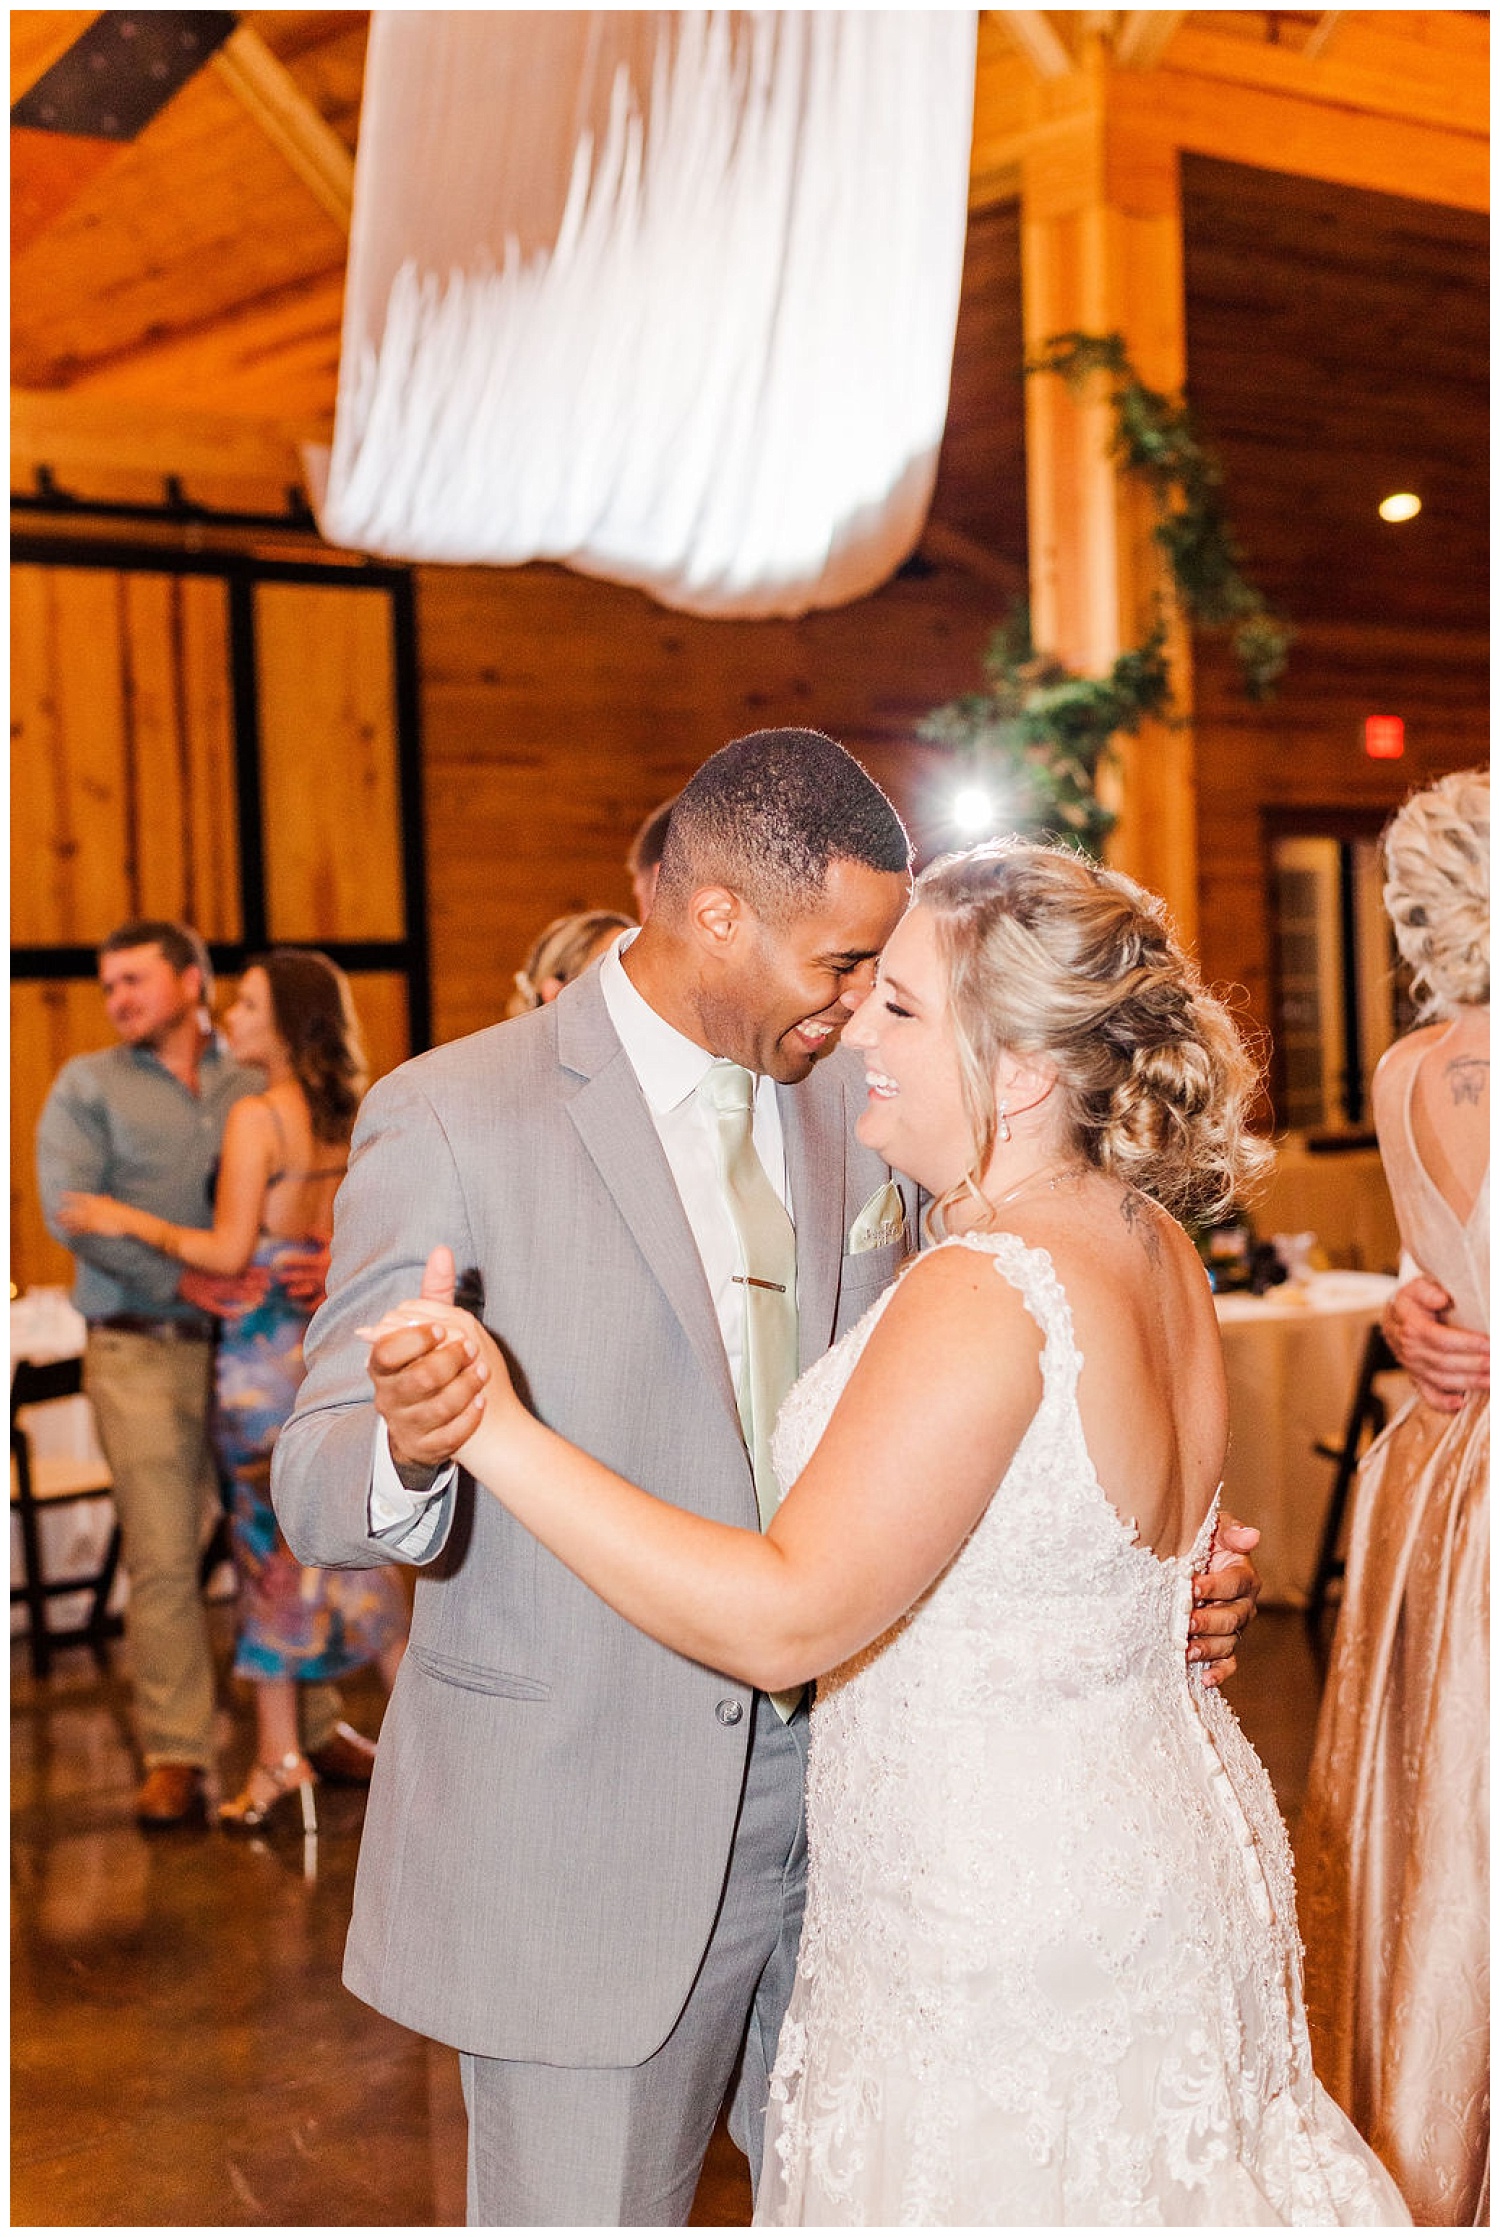 bride and groom dancing at reception at The Carolina Barn